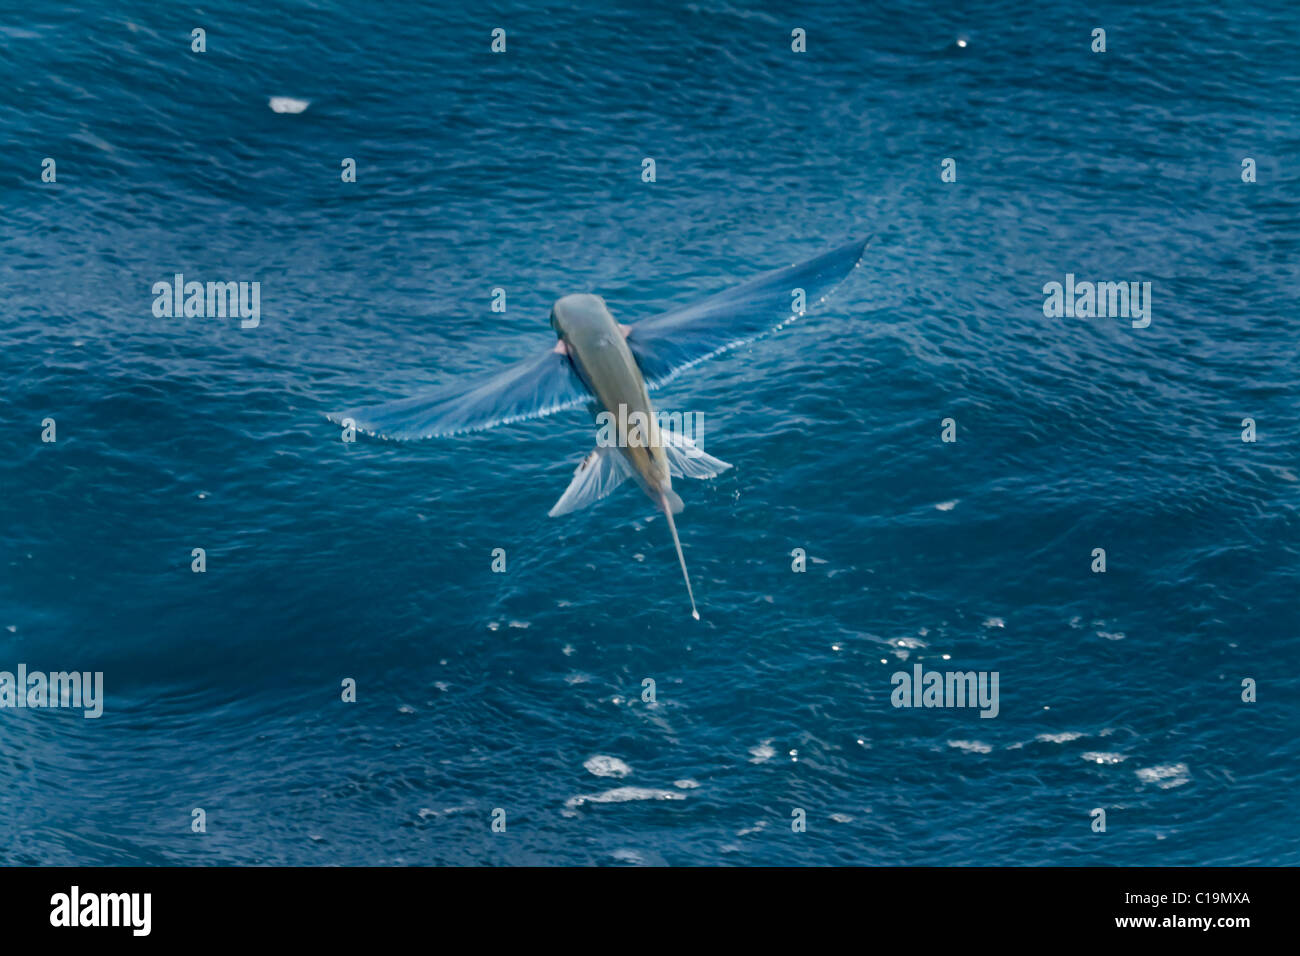 Les espèces de poissons volants dans l'air, nom scientifique inconnu, Maldives, océan Indien. Banque D'Images